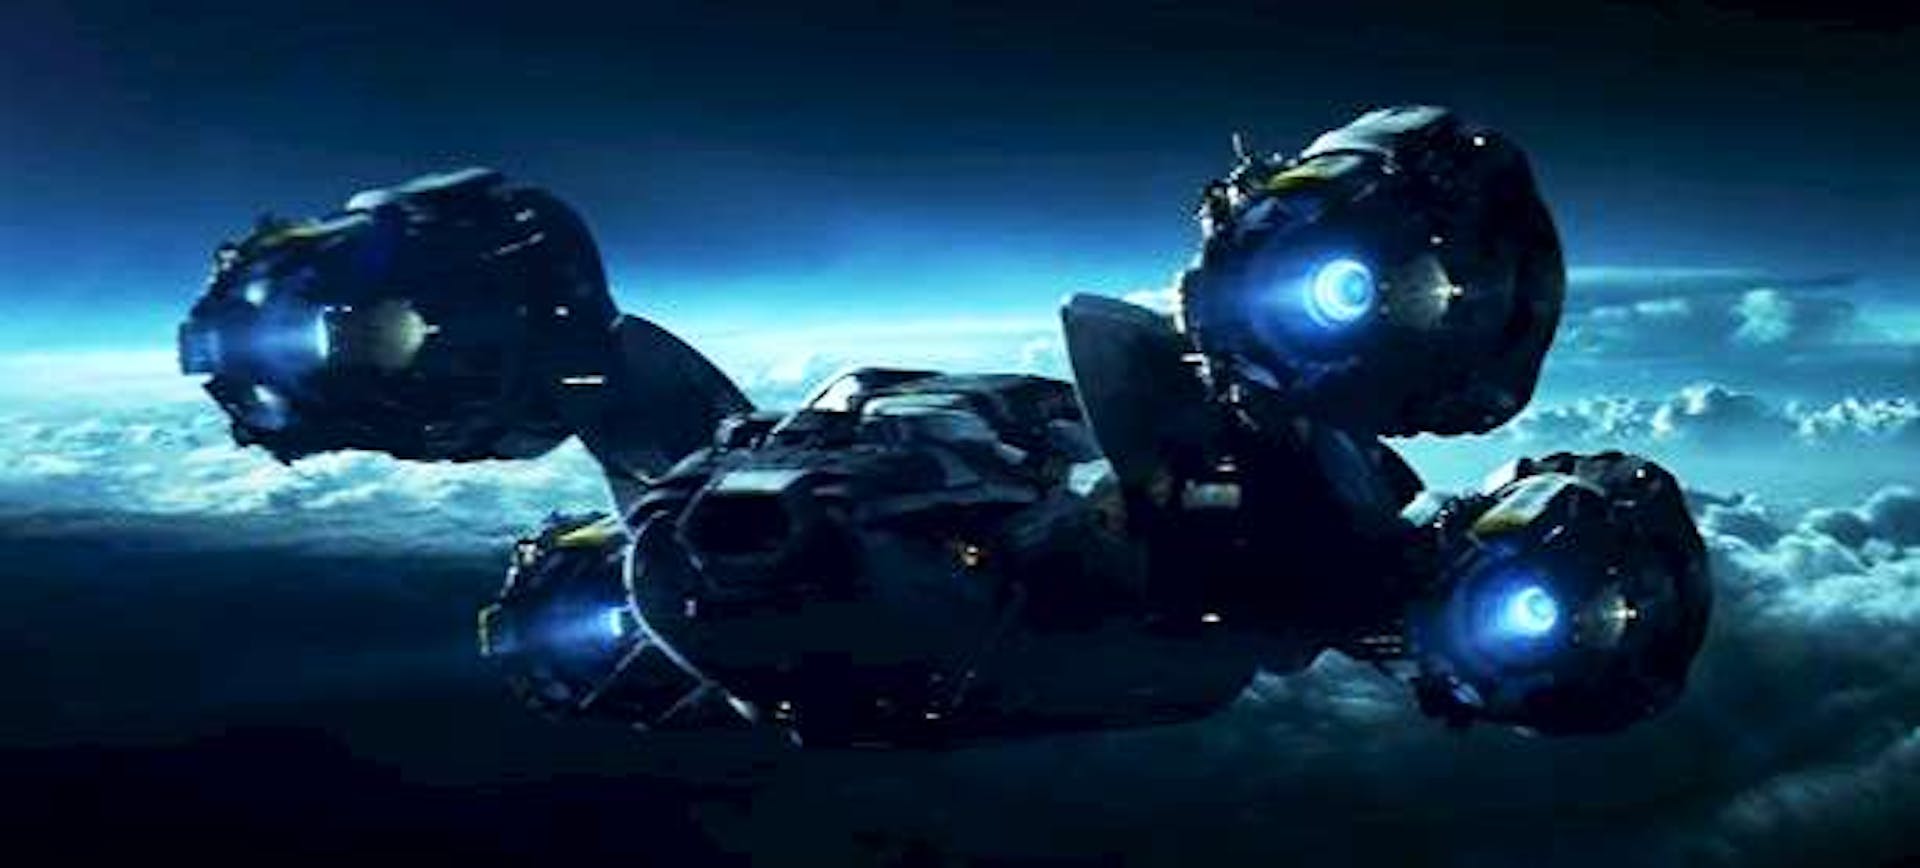 Prometheus Landing scene 2012 https://www.youtube.com/watch?v=q9OLCVMm10Q